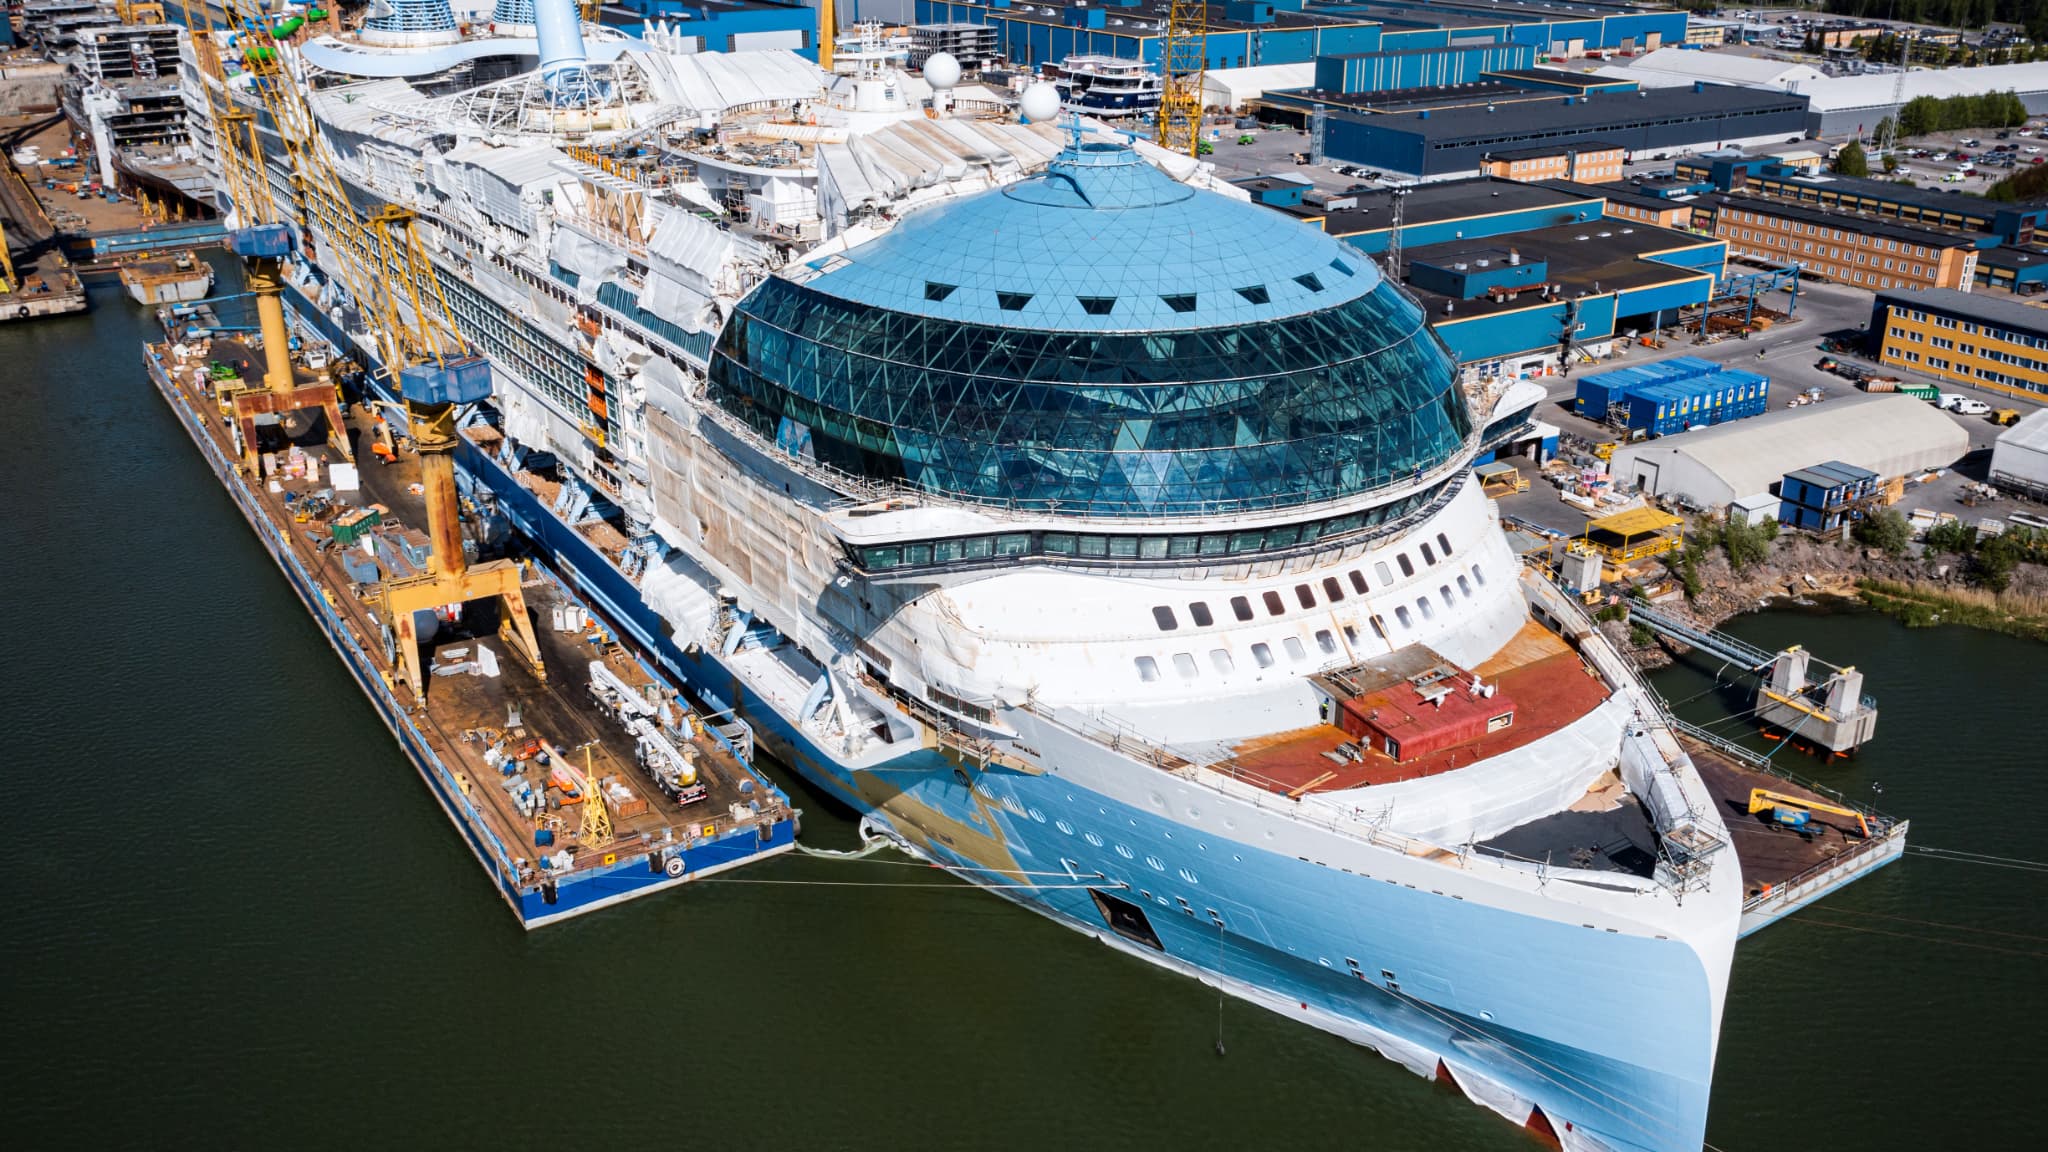 La nave da crociera più grande del mondo ospiterà presto 7.600 passeggeri